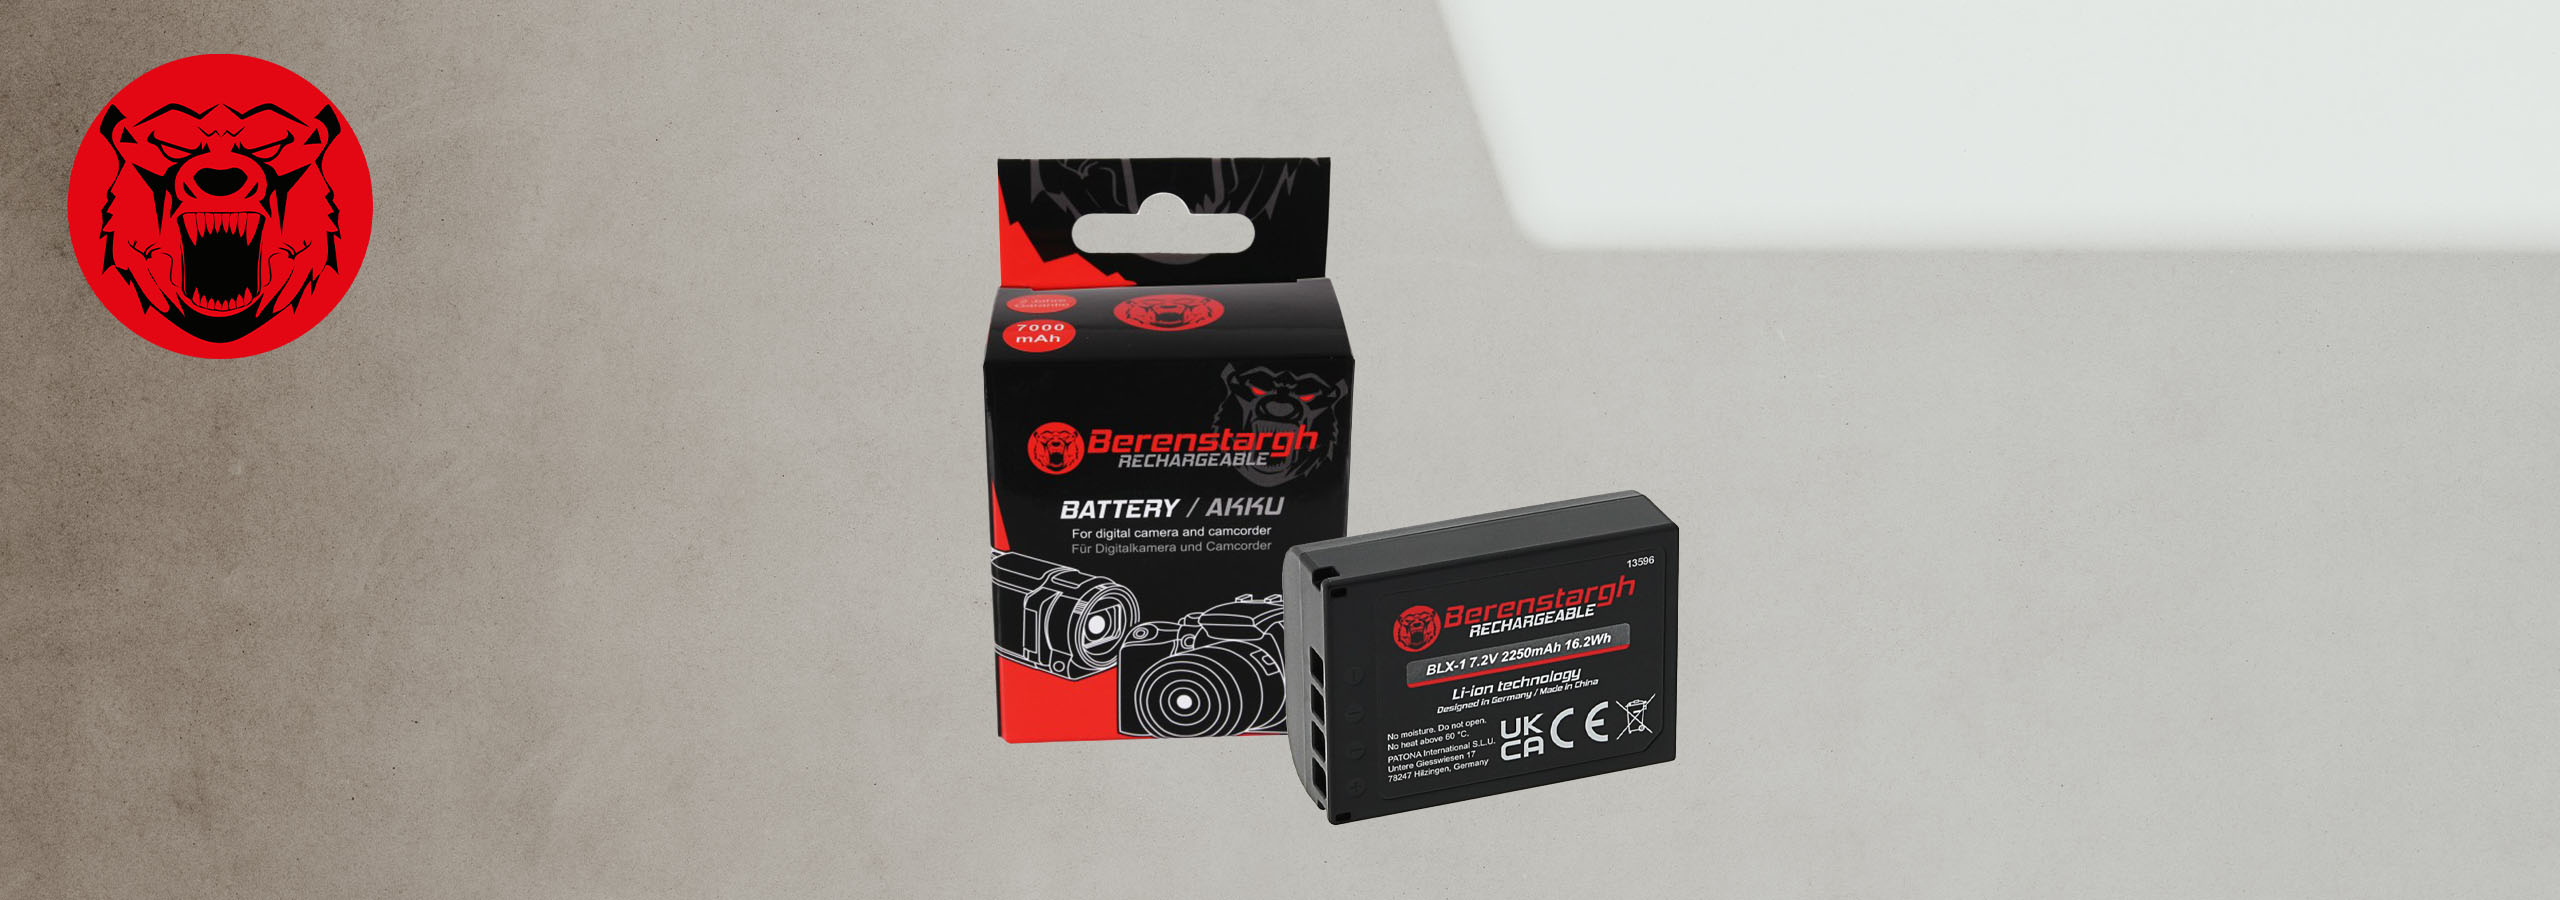 Berenstargh Akku für Olympus Kameras mit Verpackung im Hintergrund